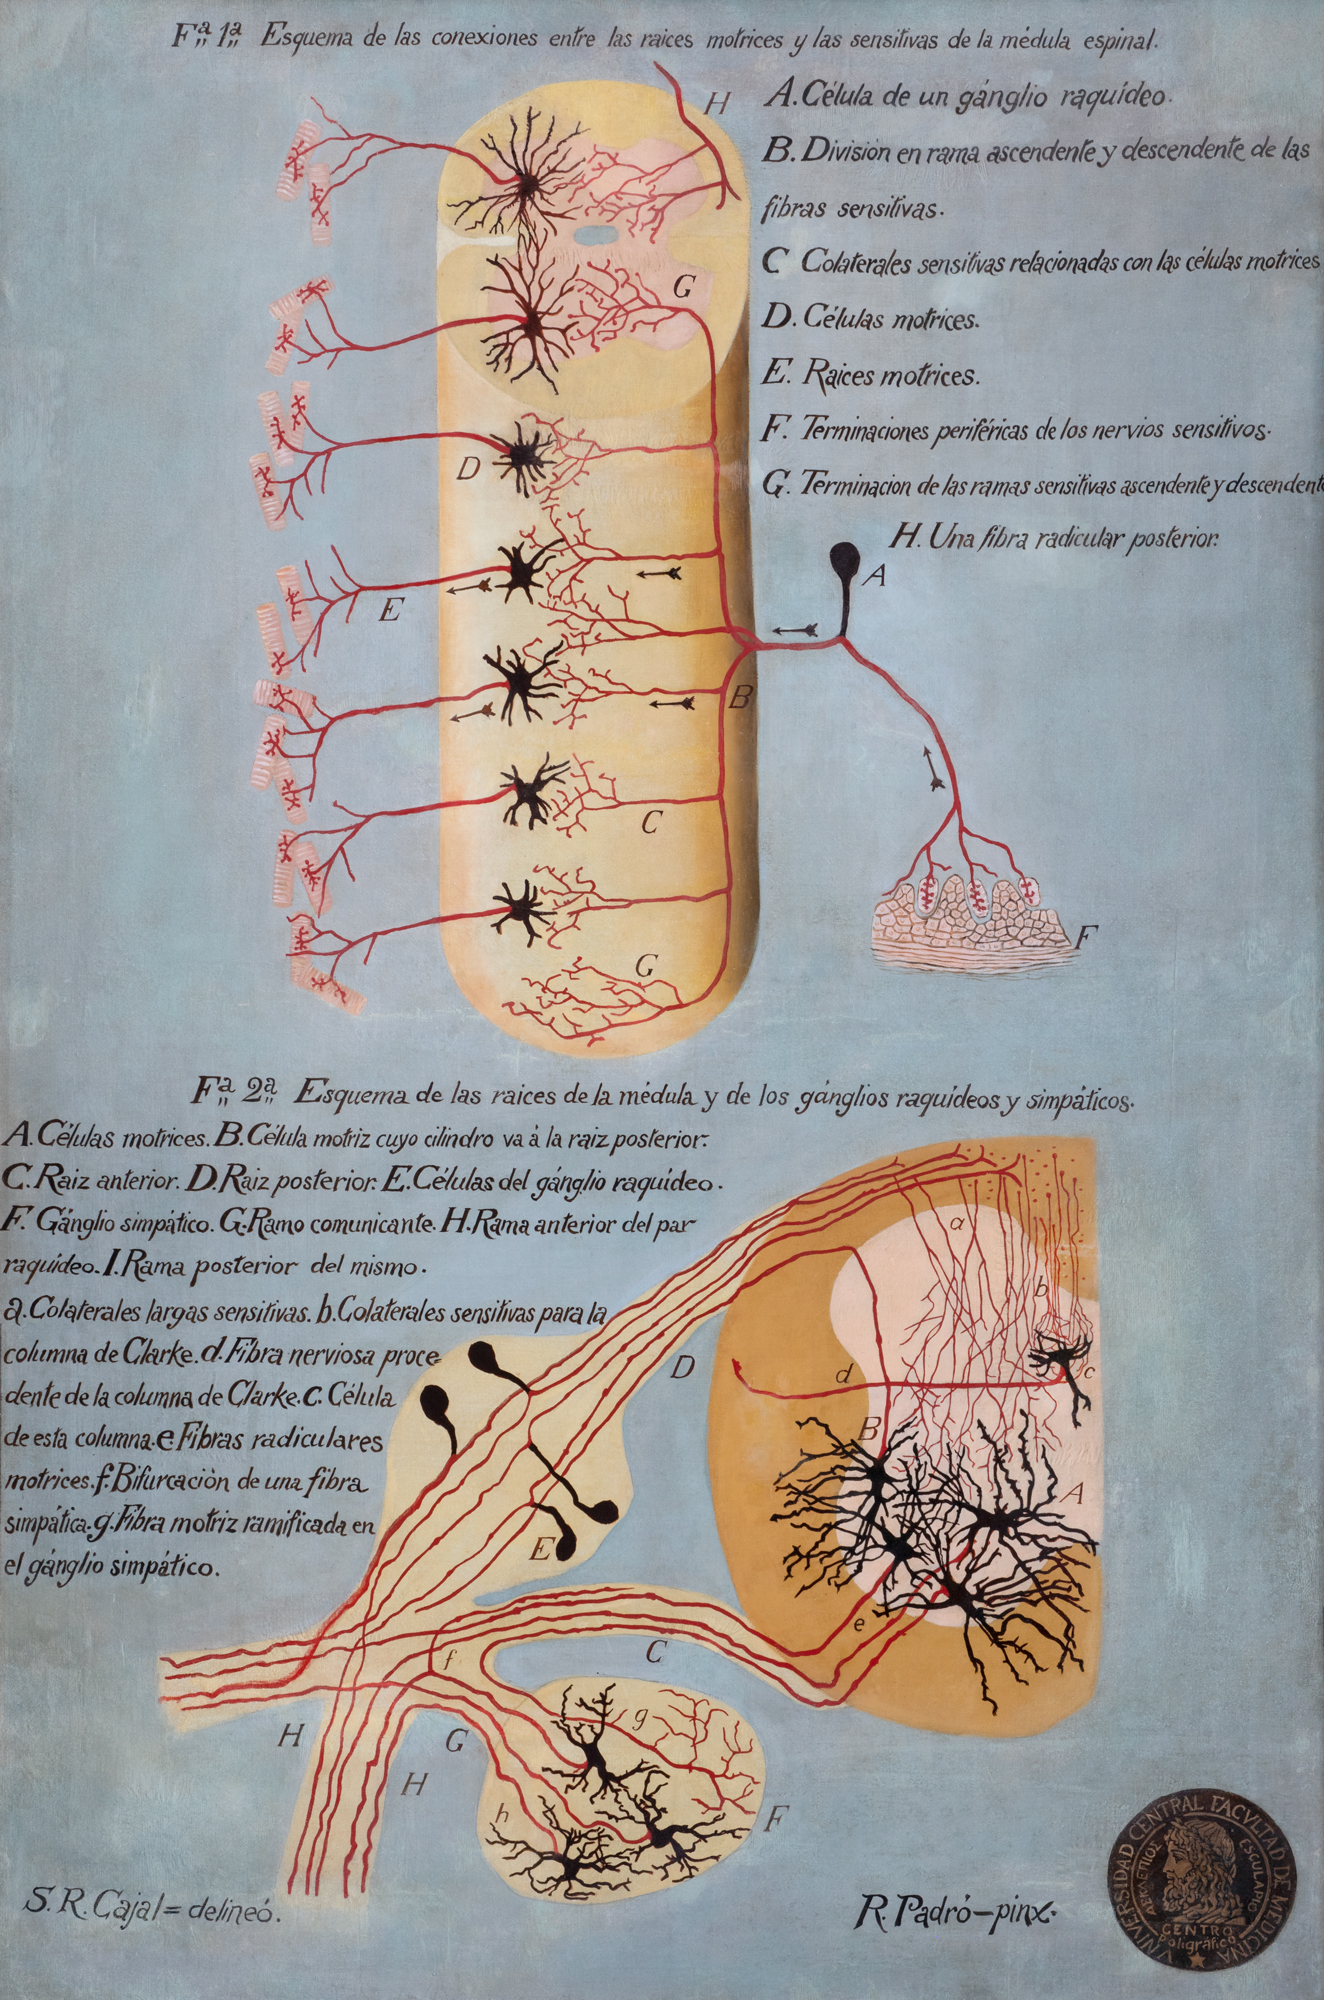 Conexiones de la médula espinal: motoras, sensitivas y vegetativas simpáticas